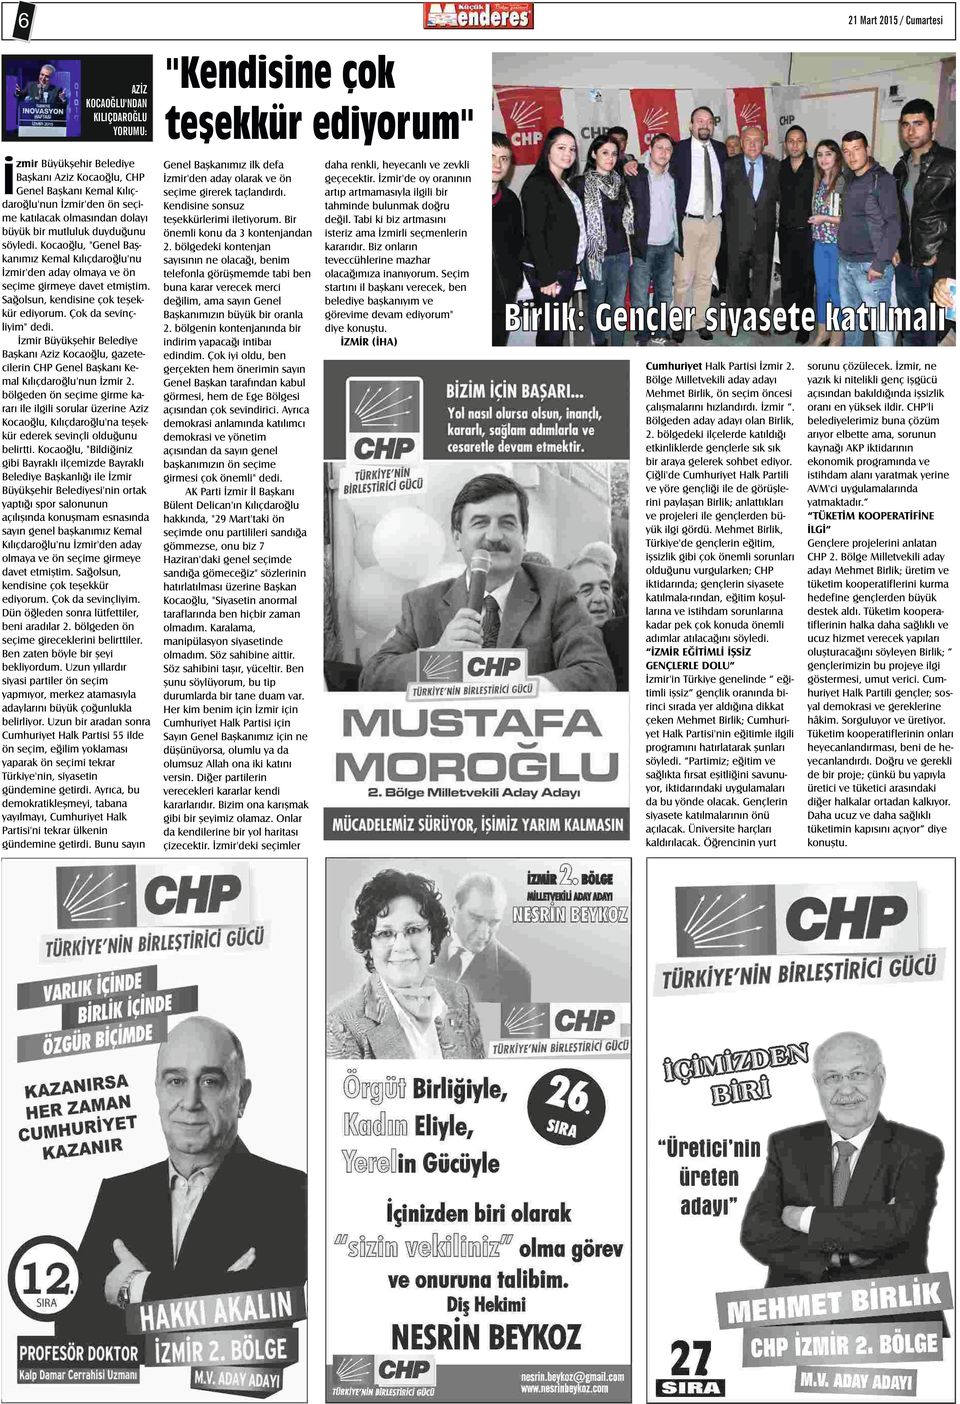 İzmir Büyükşehir Belediye Başkanı Aziz Kocaoğlu, gazetecilerin CHP Genel Başkanı Kemal Kılıçdaroğlu'nun İzmir 2.